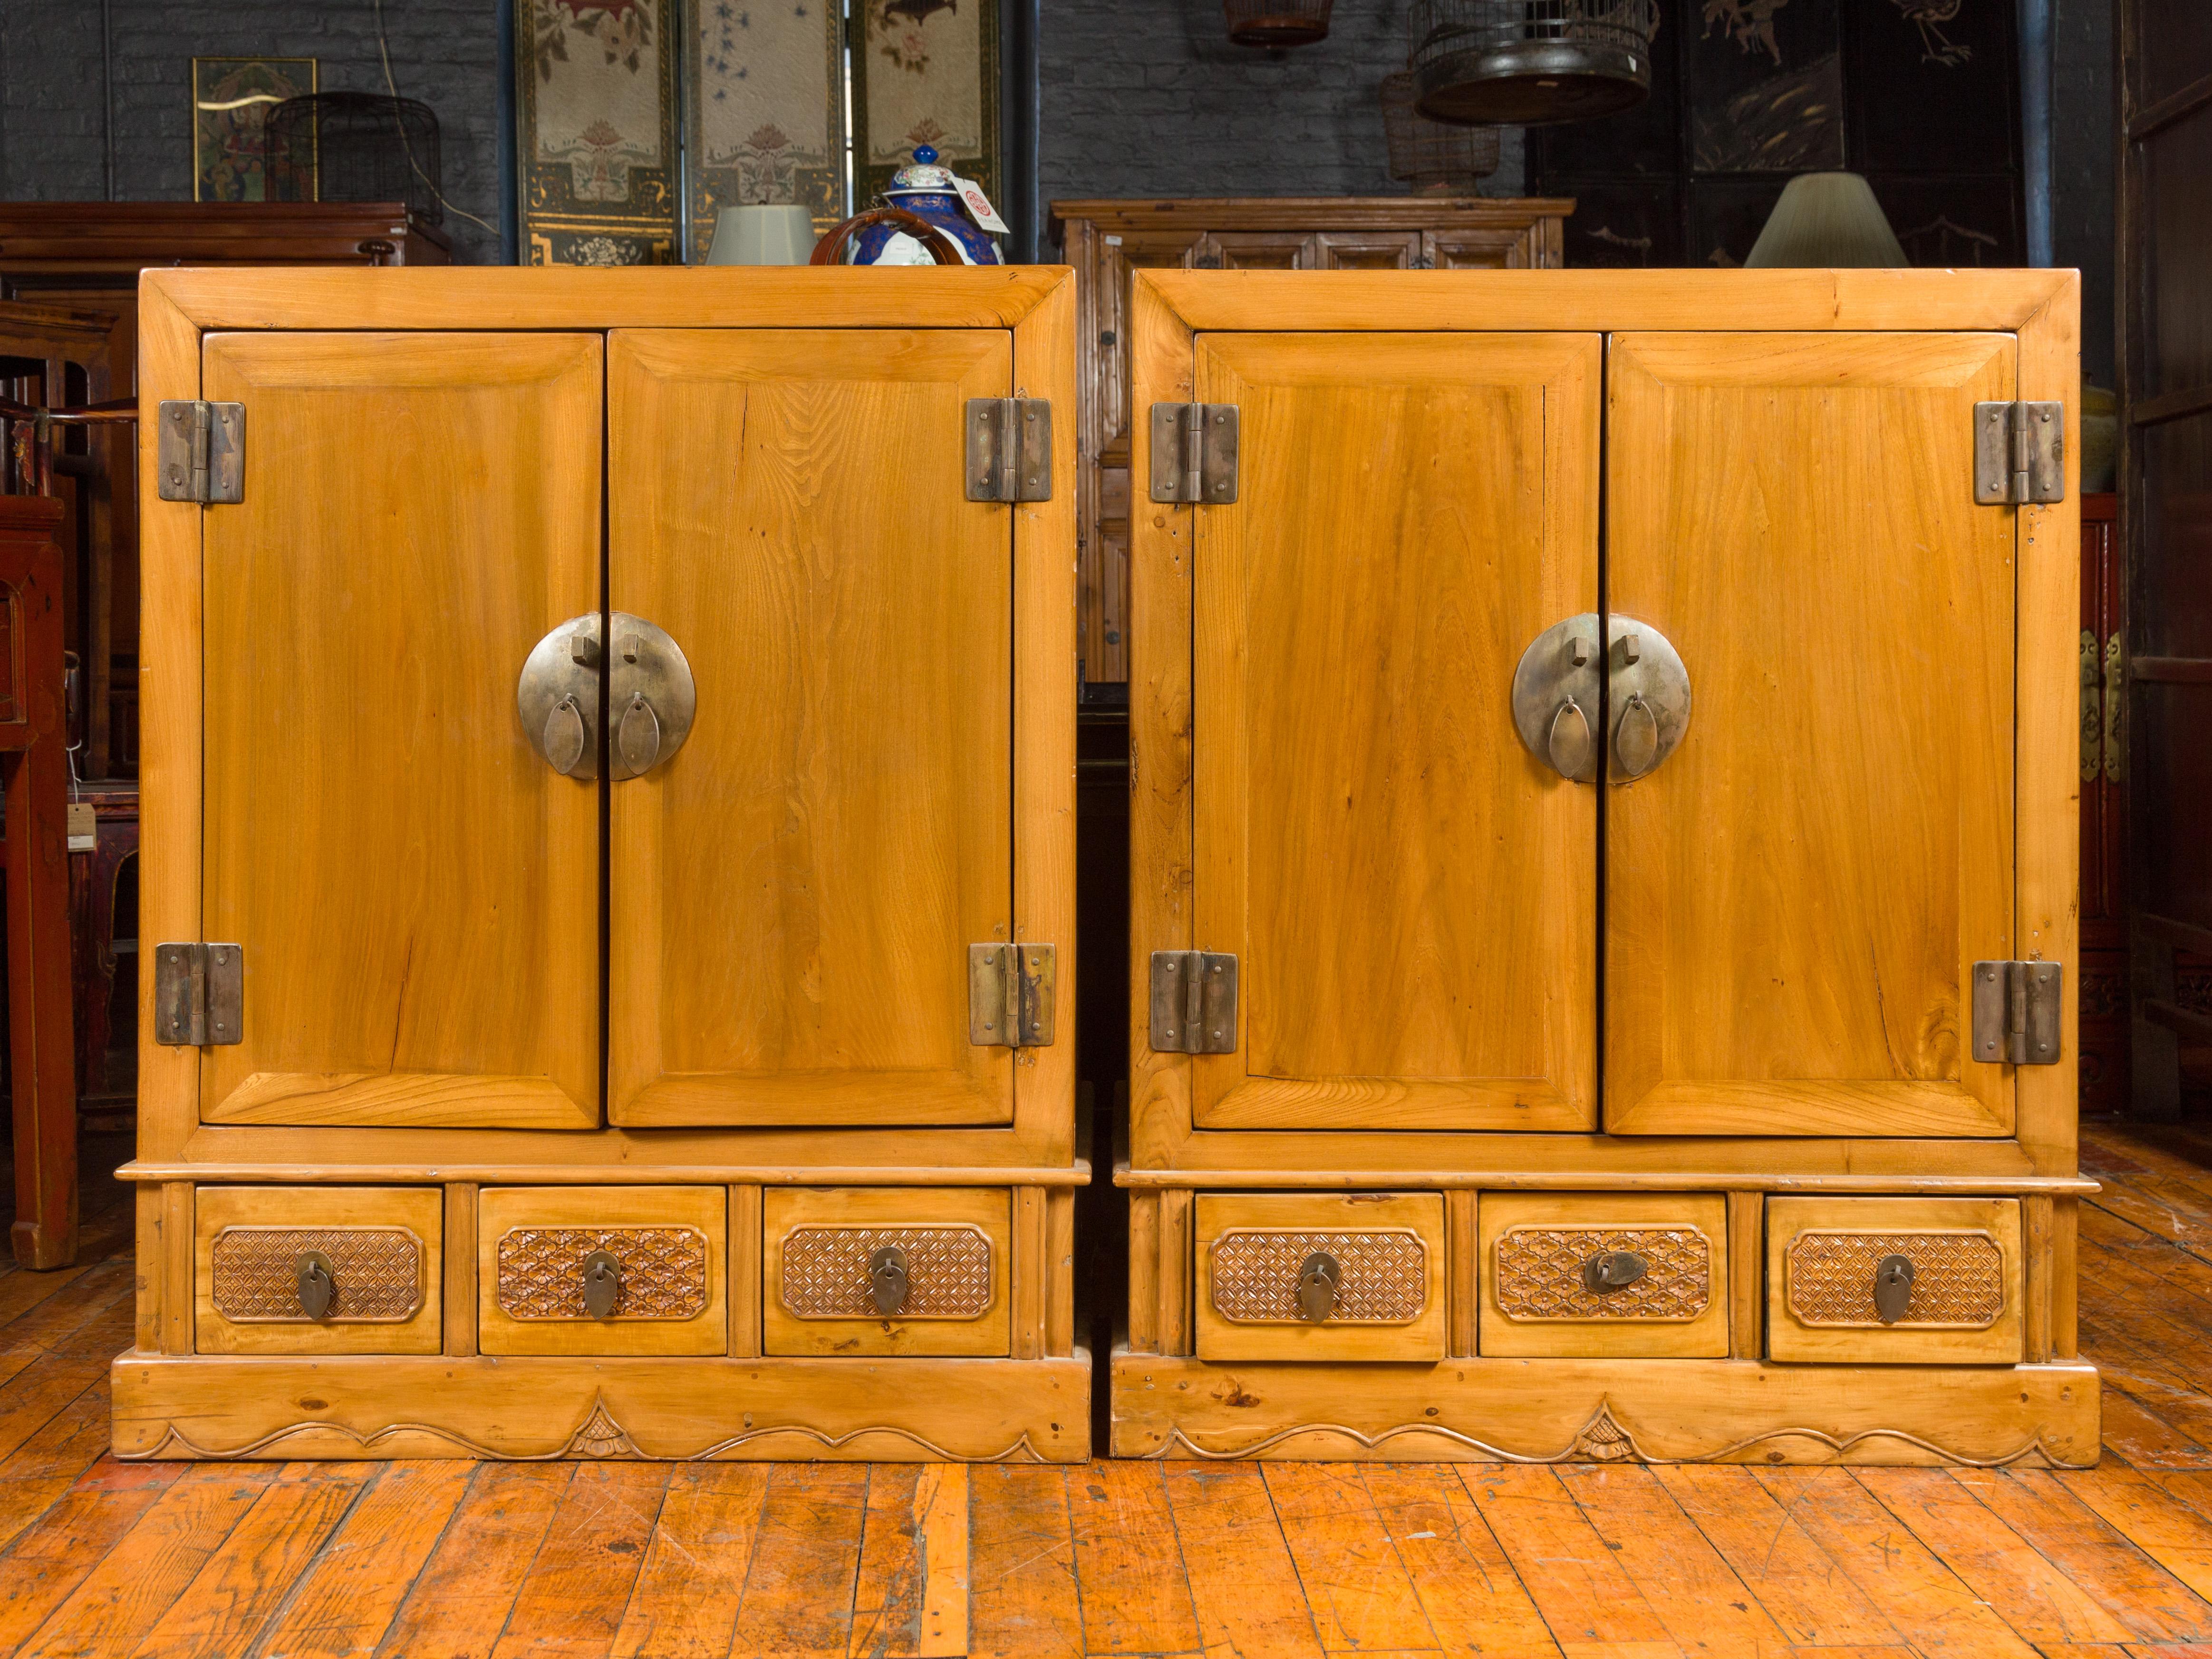 Paire d'armoires en bois de yumu de la dynastie chinoise Qing, datant du 19e siècle, avec doubles portes, tiroirs et motifs sculptés. Cette paire d'armoires en bois de yumu de la dynastie chinoise Qing, datant du XIXe siècle, offre un mélange